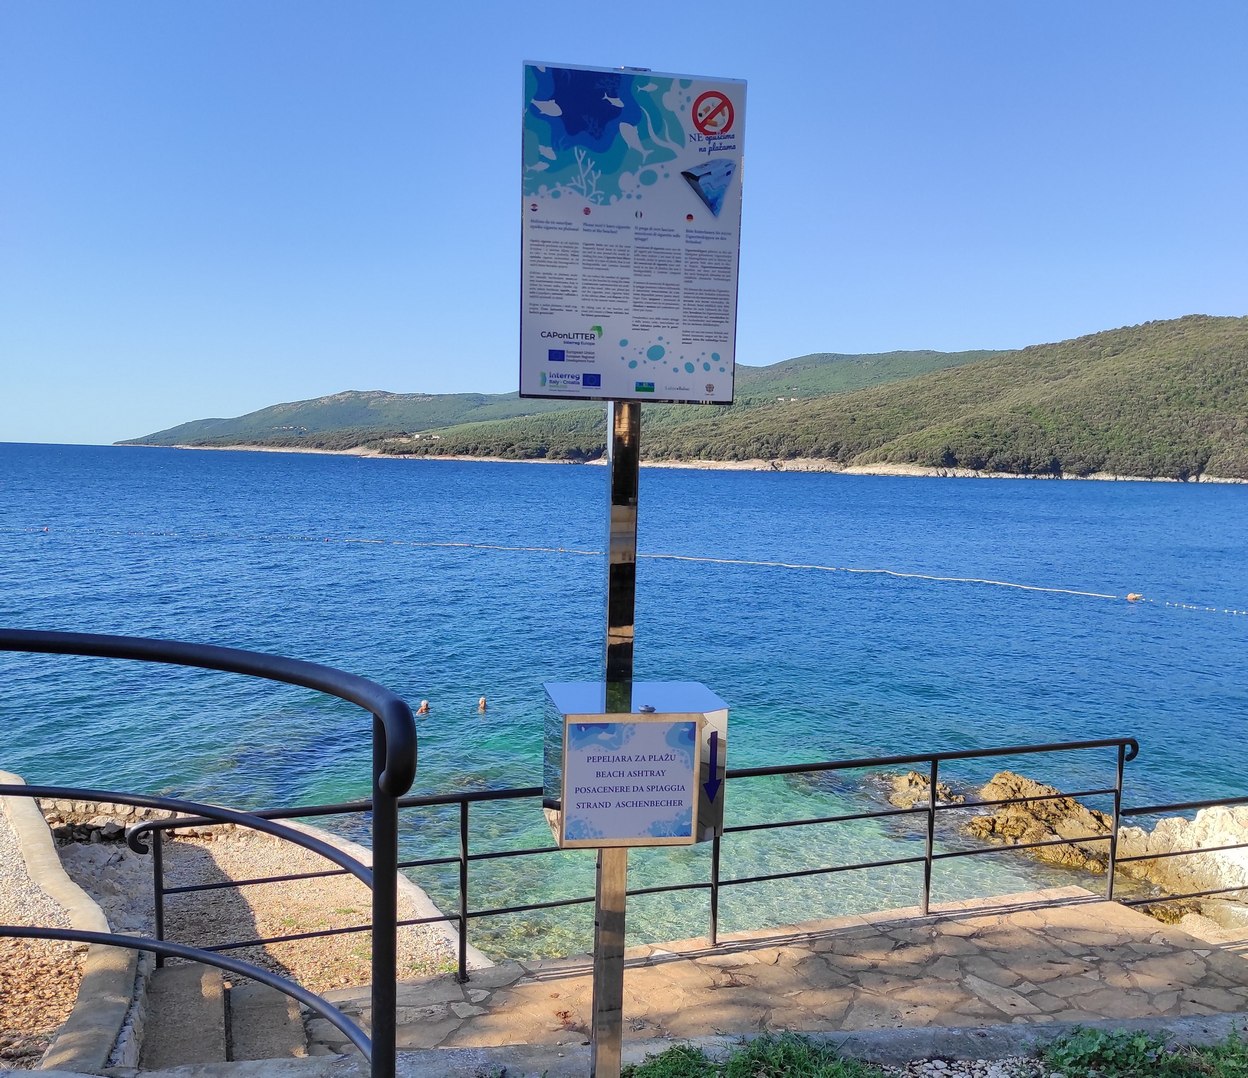 Free-to-use ashtrays on Istrian beaches